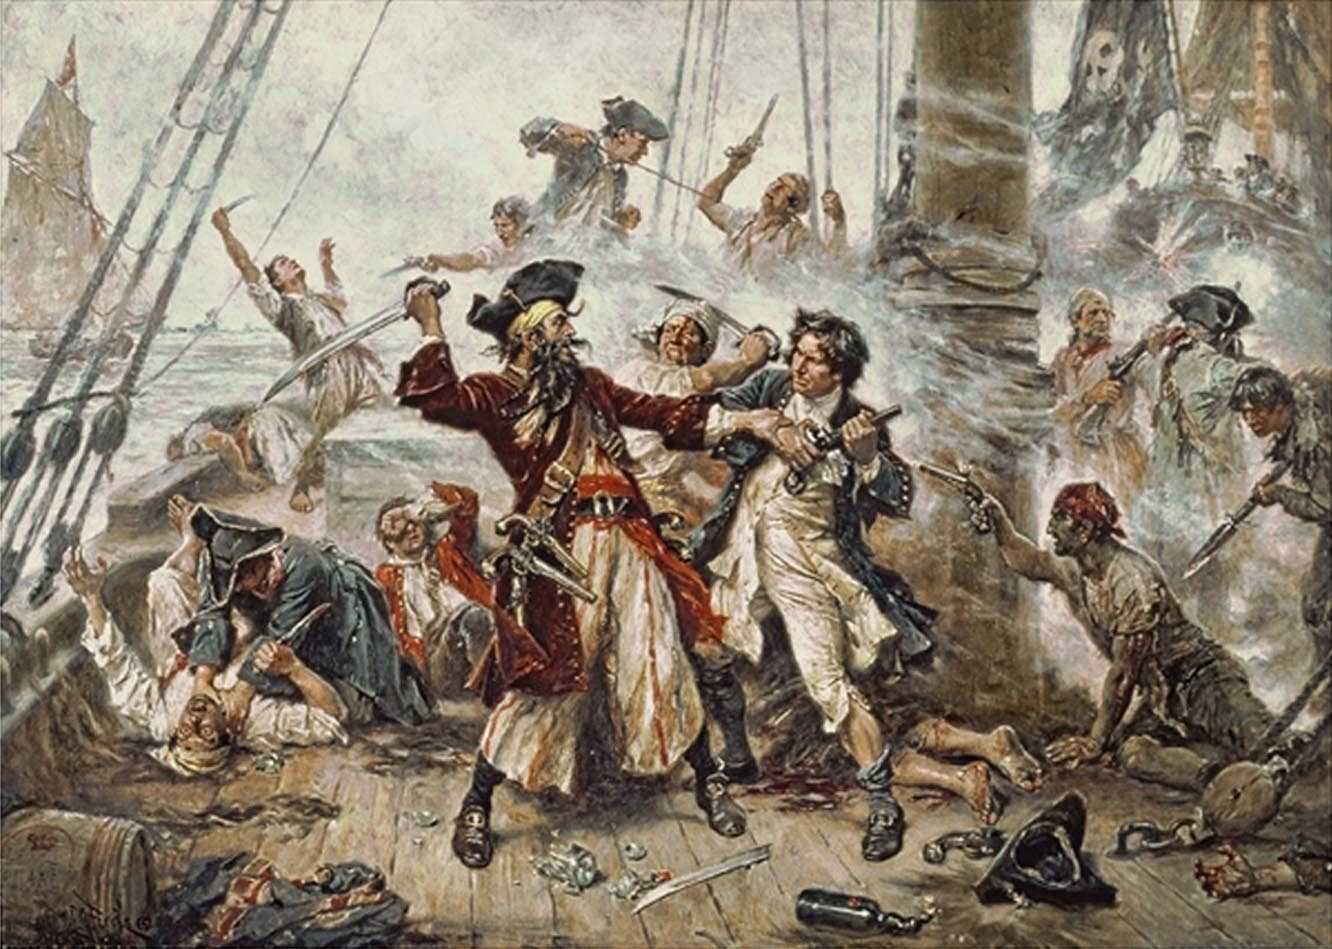 Pirátsky kódex